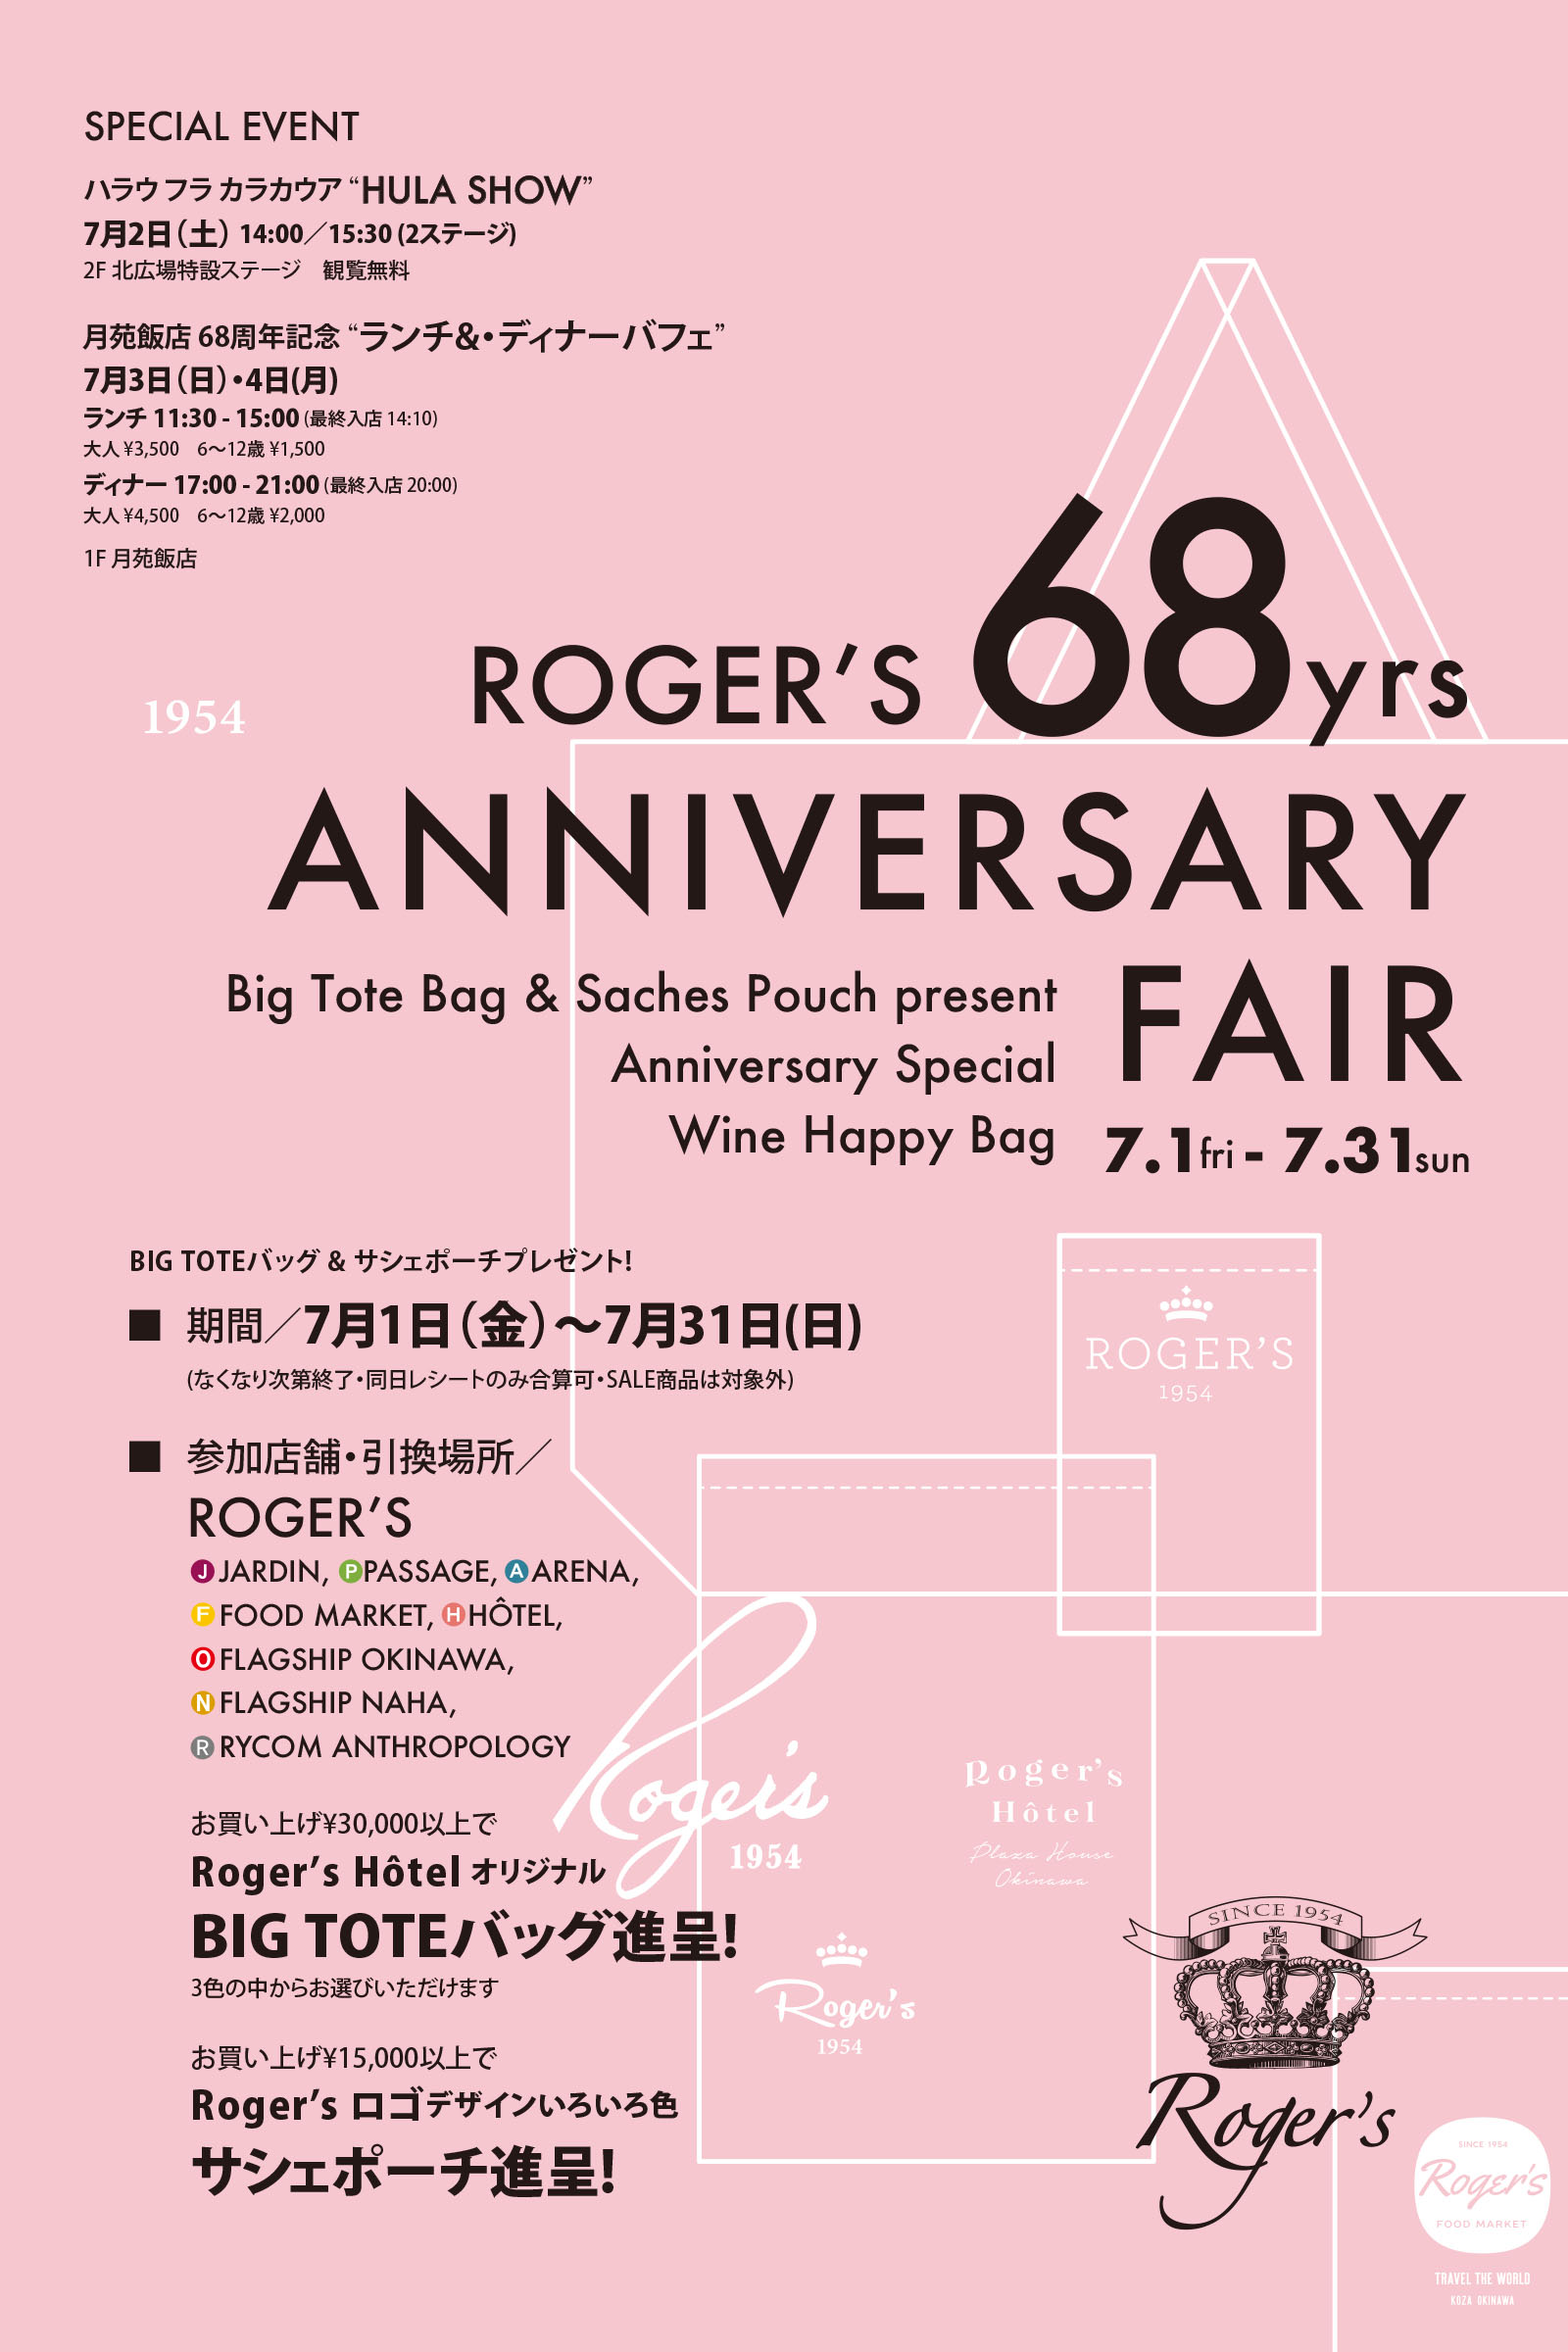 ROGER'S 68yrs ANNIVERSARY FAIR 創業記念の7月、アニバーサリーフェアを開催いたします